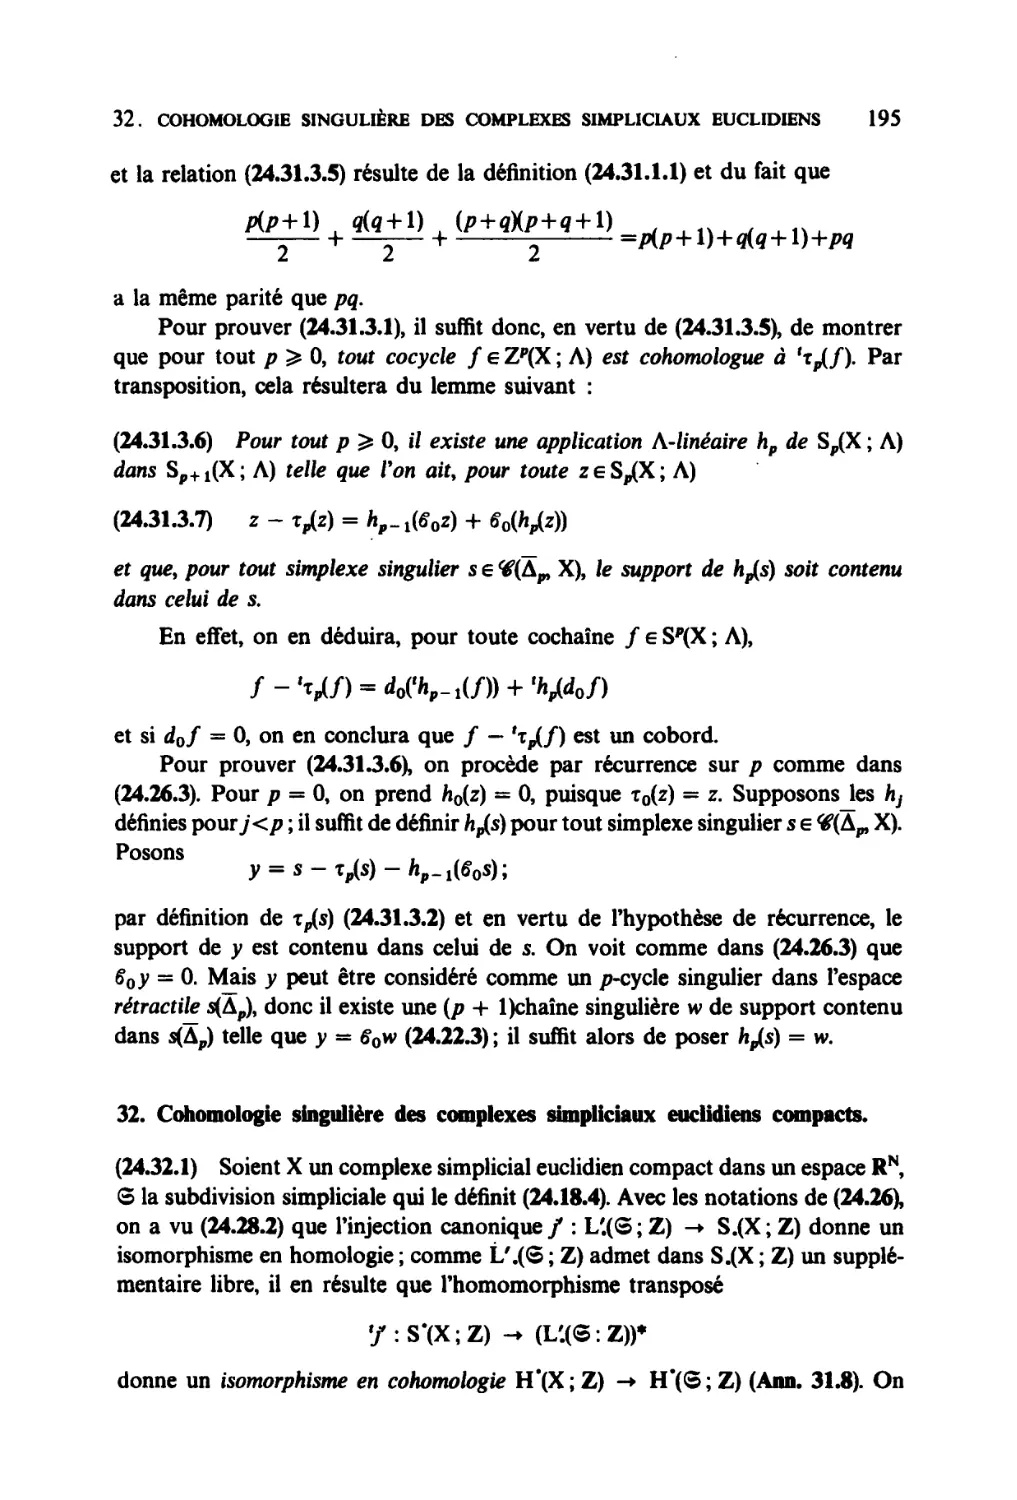 32. Cohomologie singulière des complexes simpliciaux euclidiens compacts